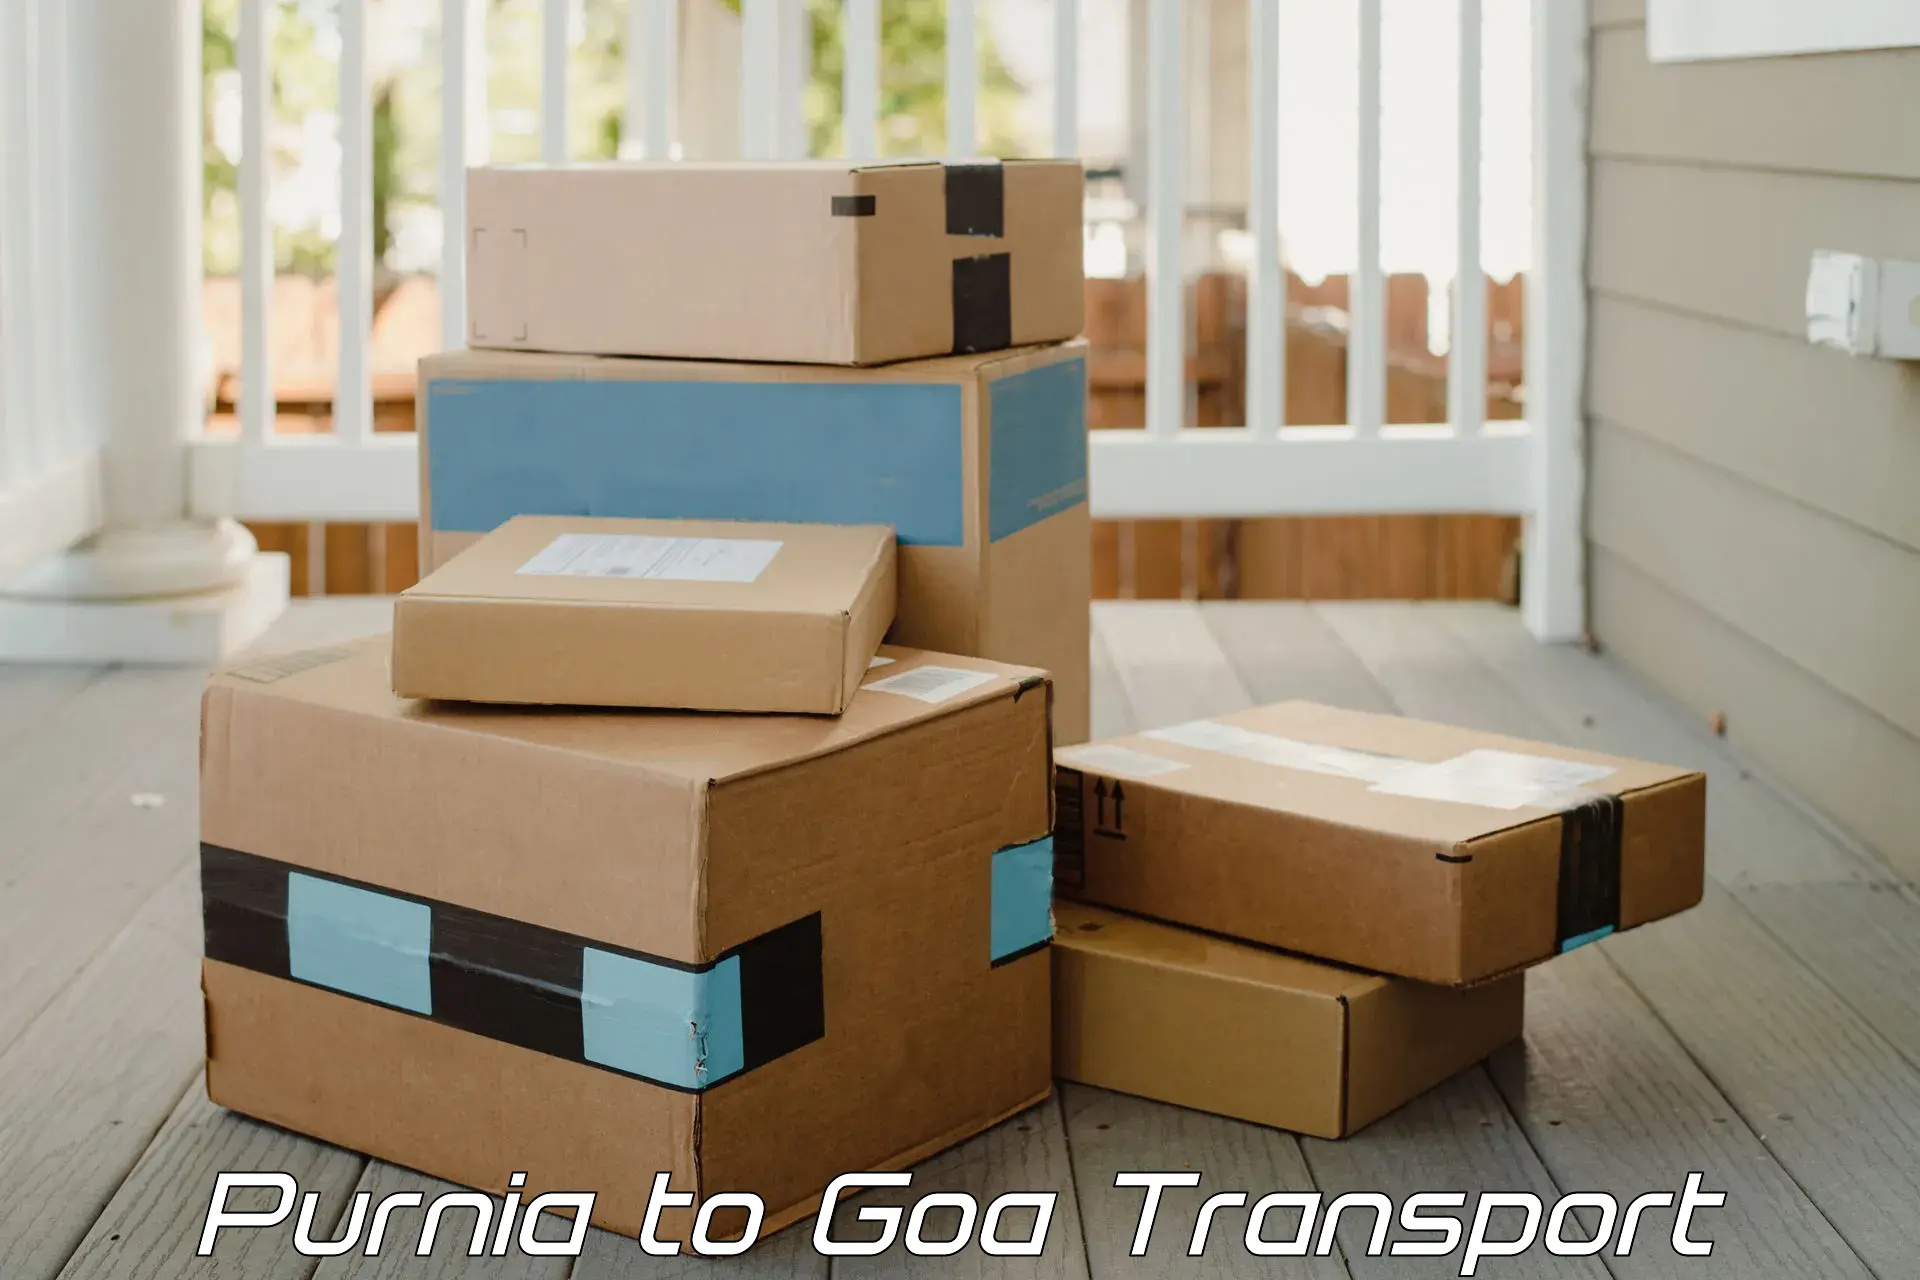 Daily parcel service transport Purnia to Mormugao Port